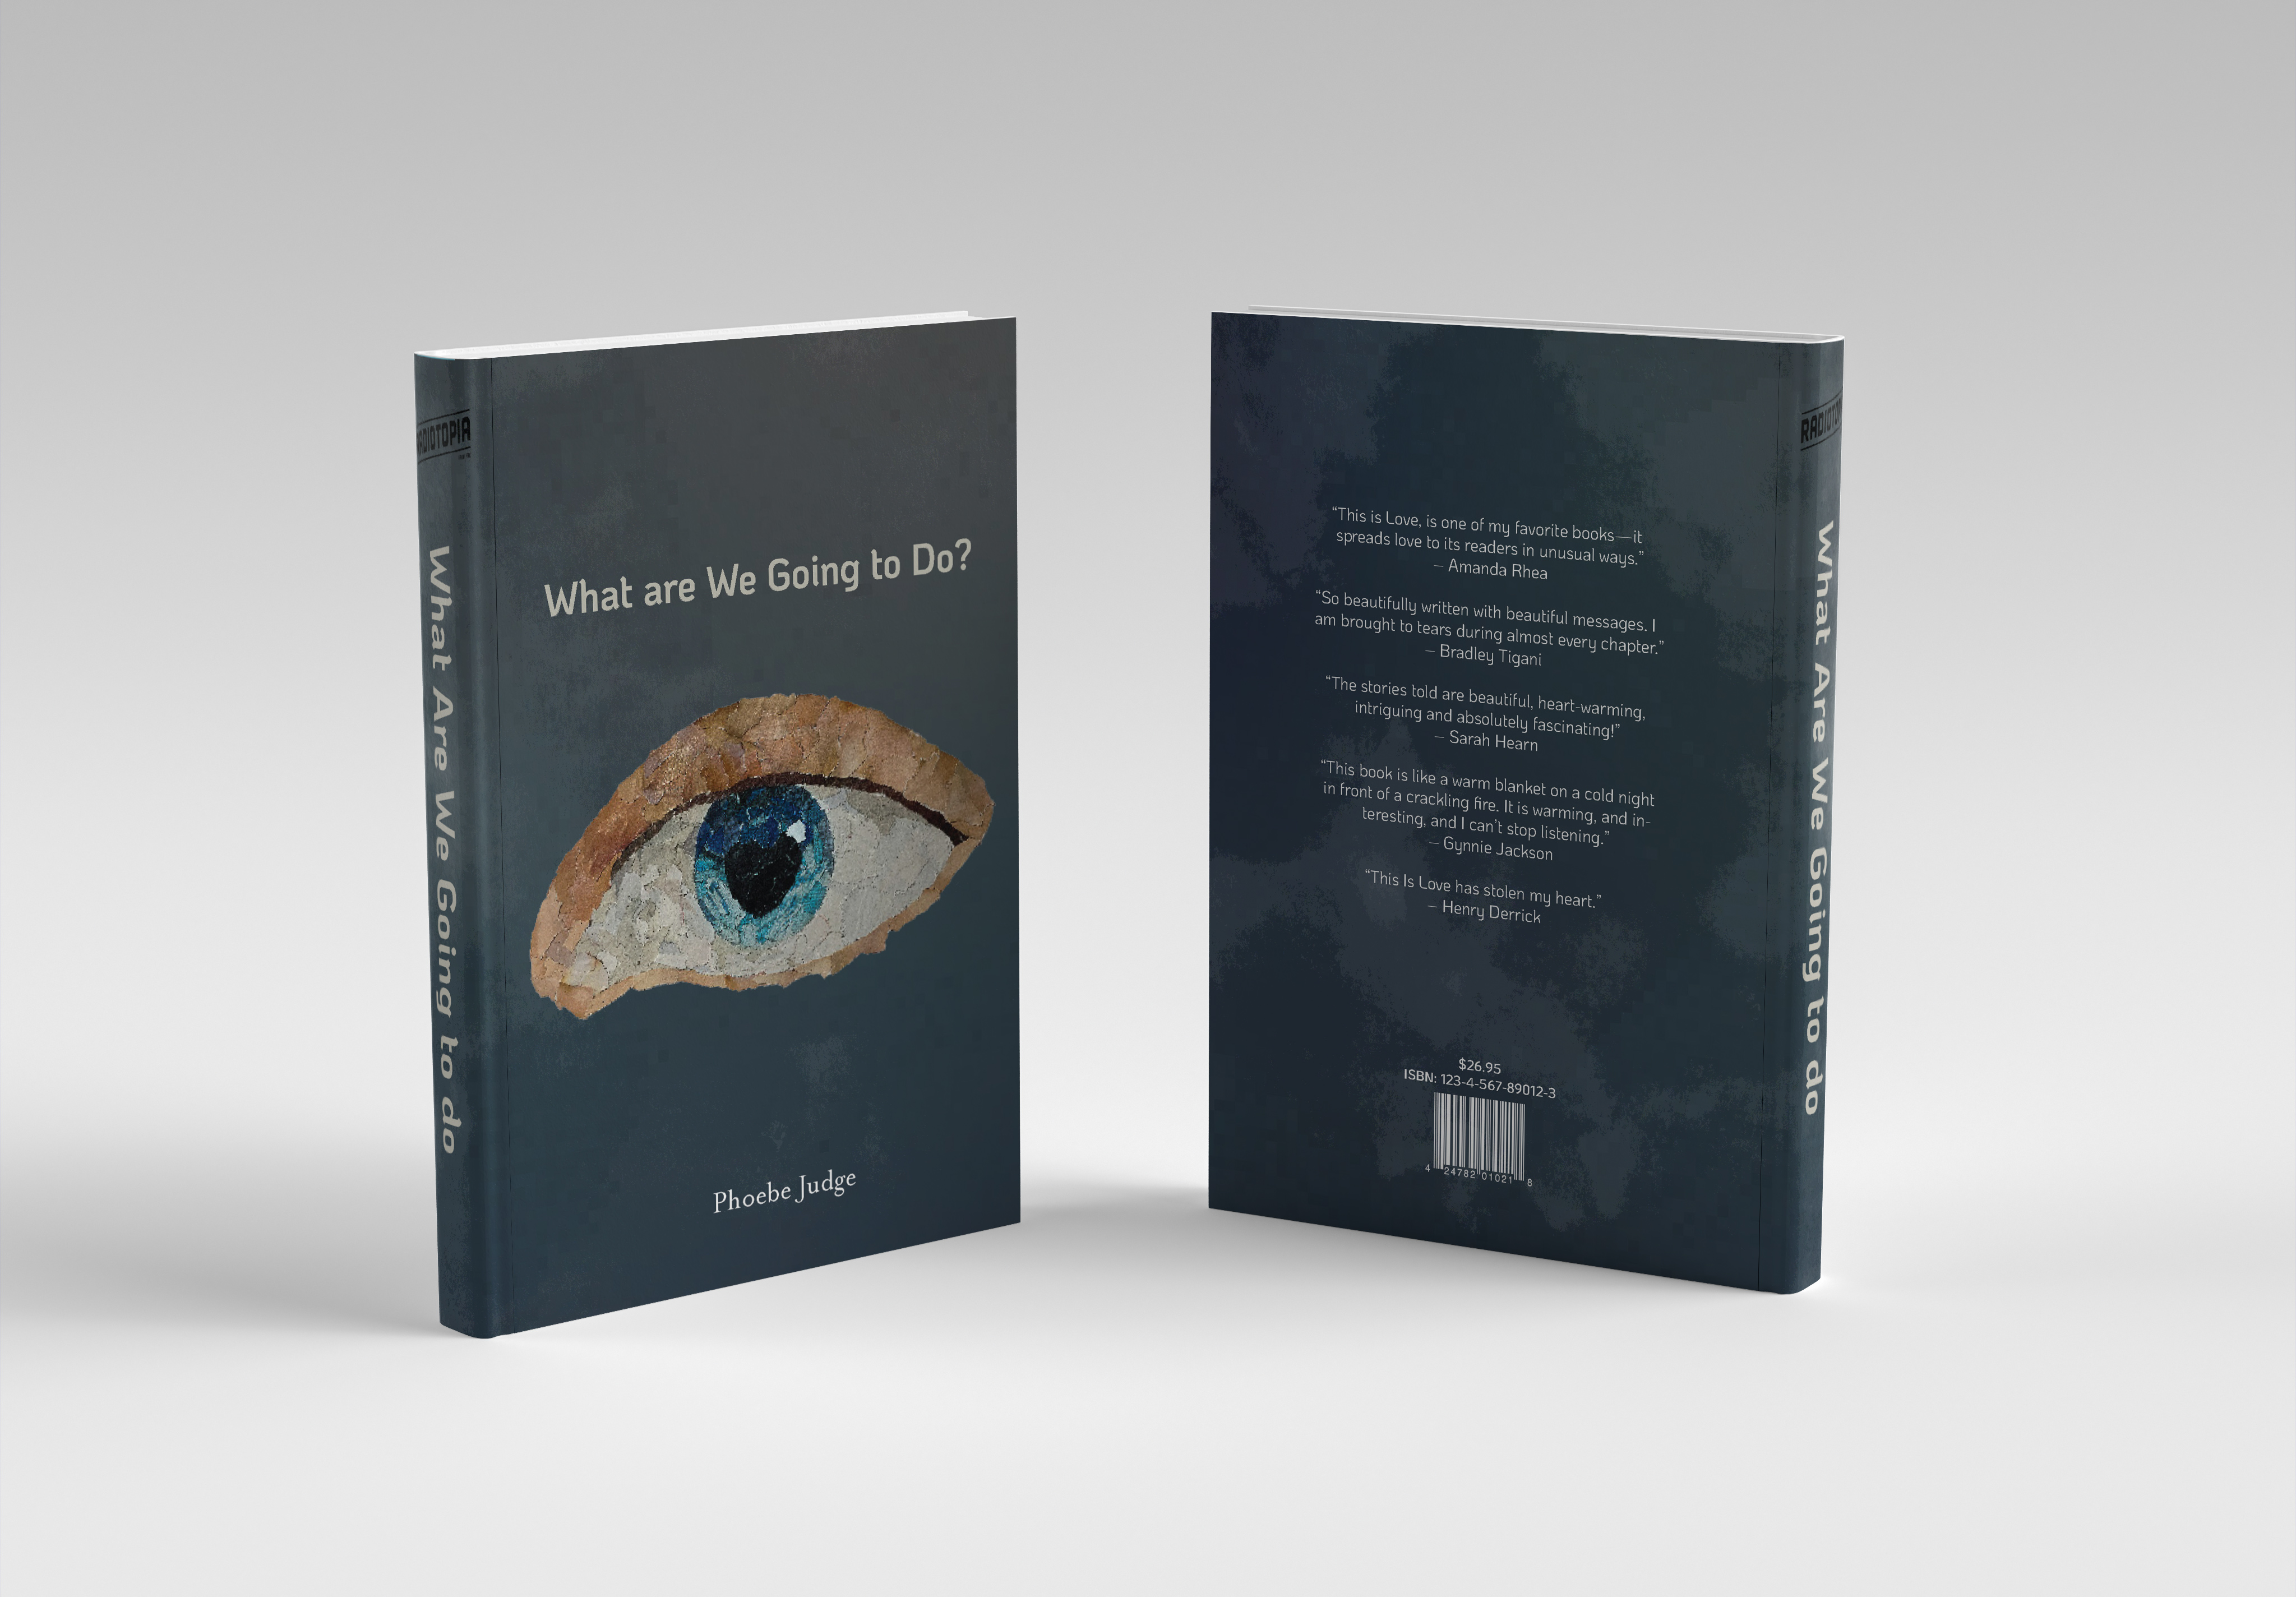 TIL Book Cover of an Eyeball